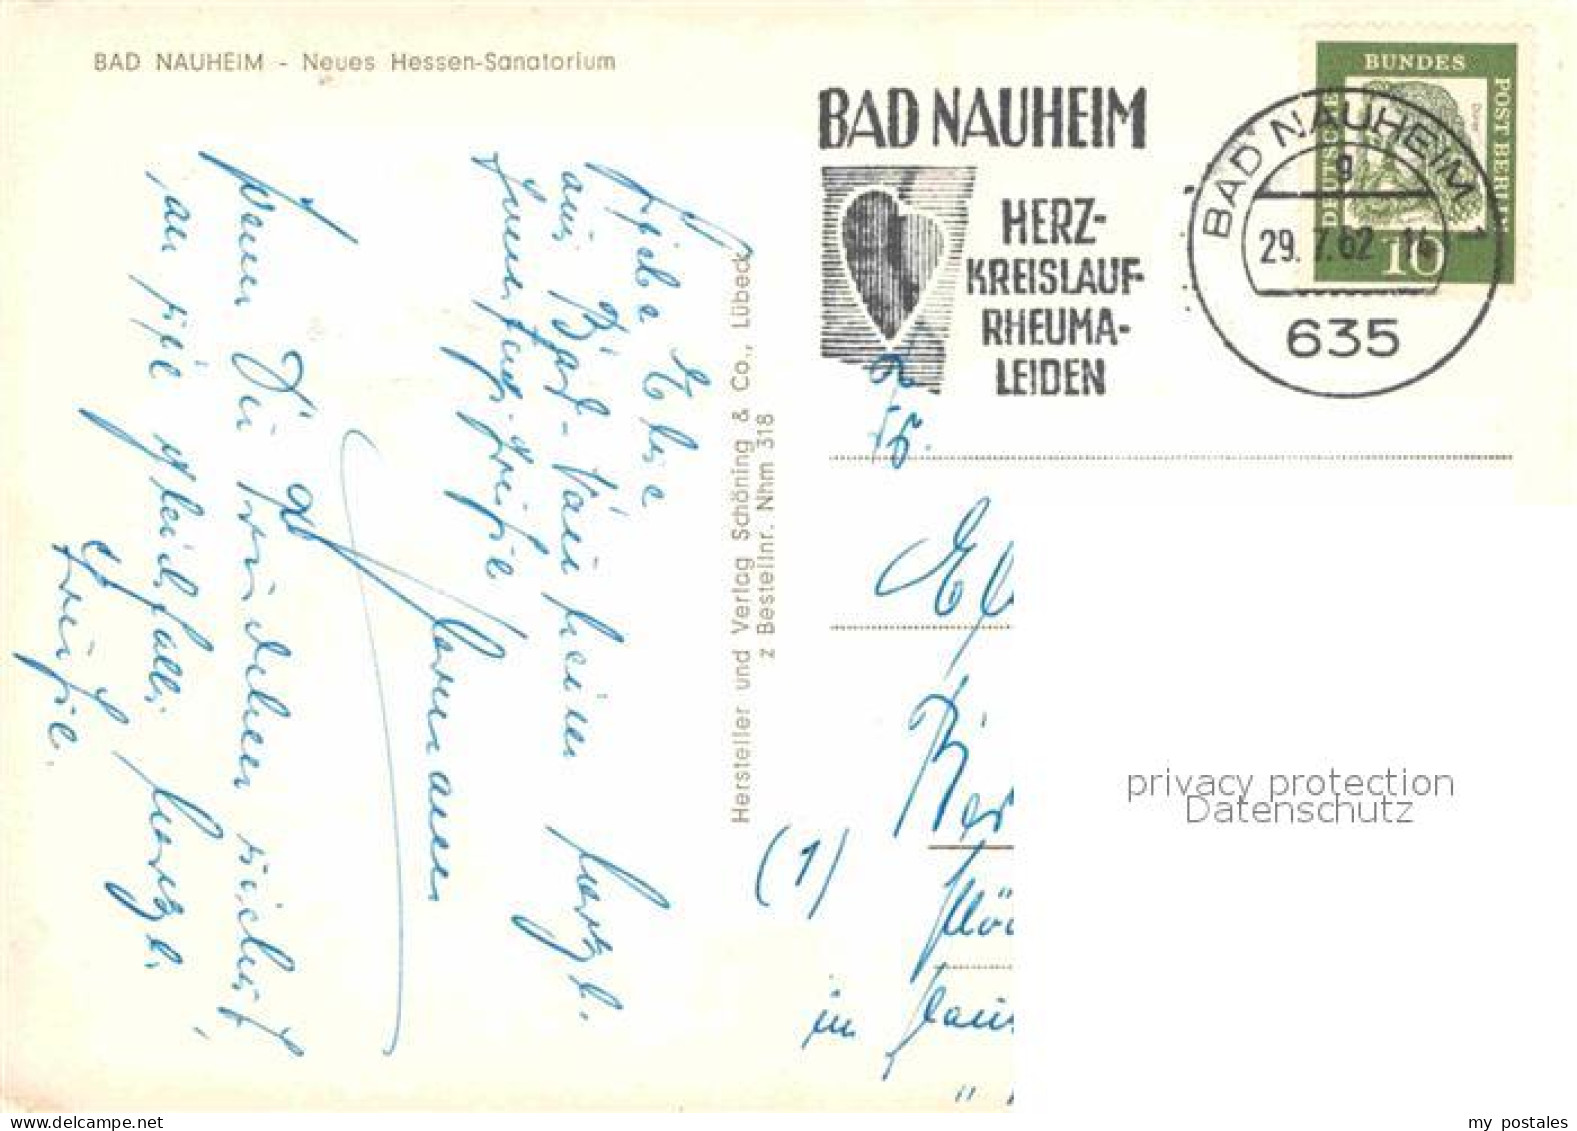 72784876 Bad Nauheim Neues Hessen Sanatorium Bad Nauheim - Bad Nauheim